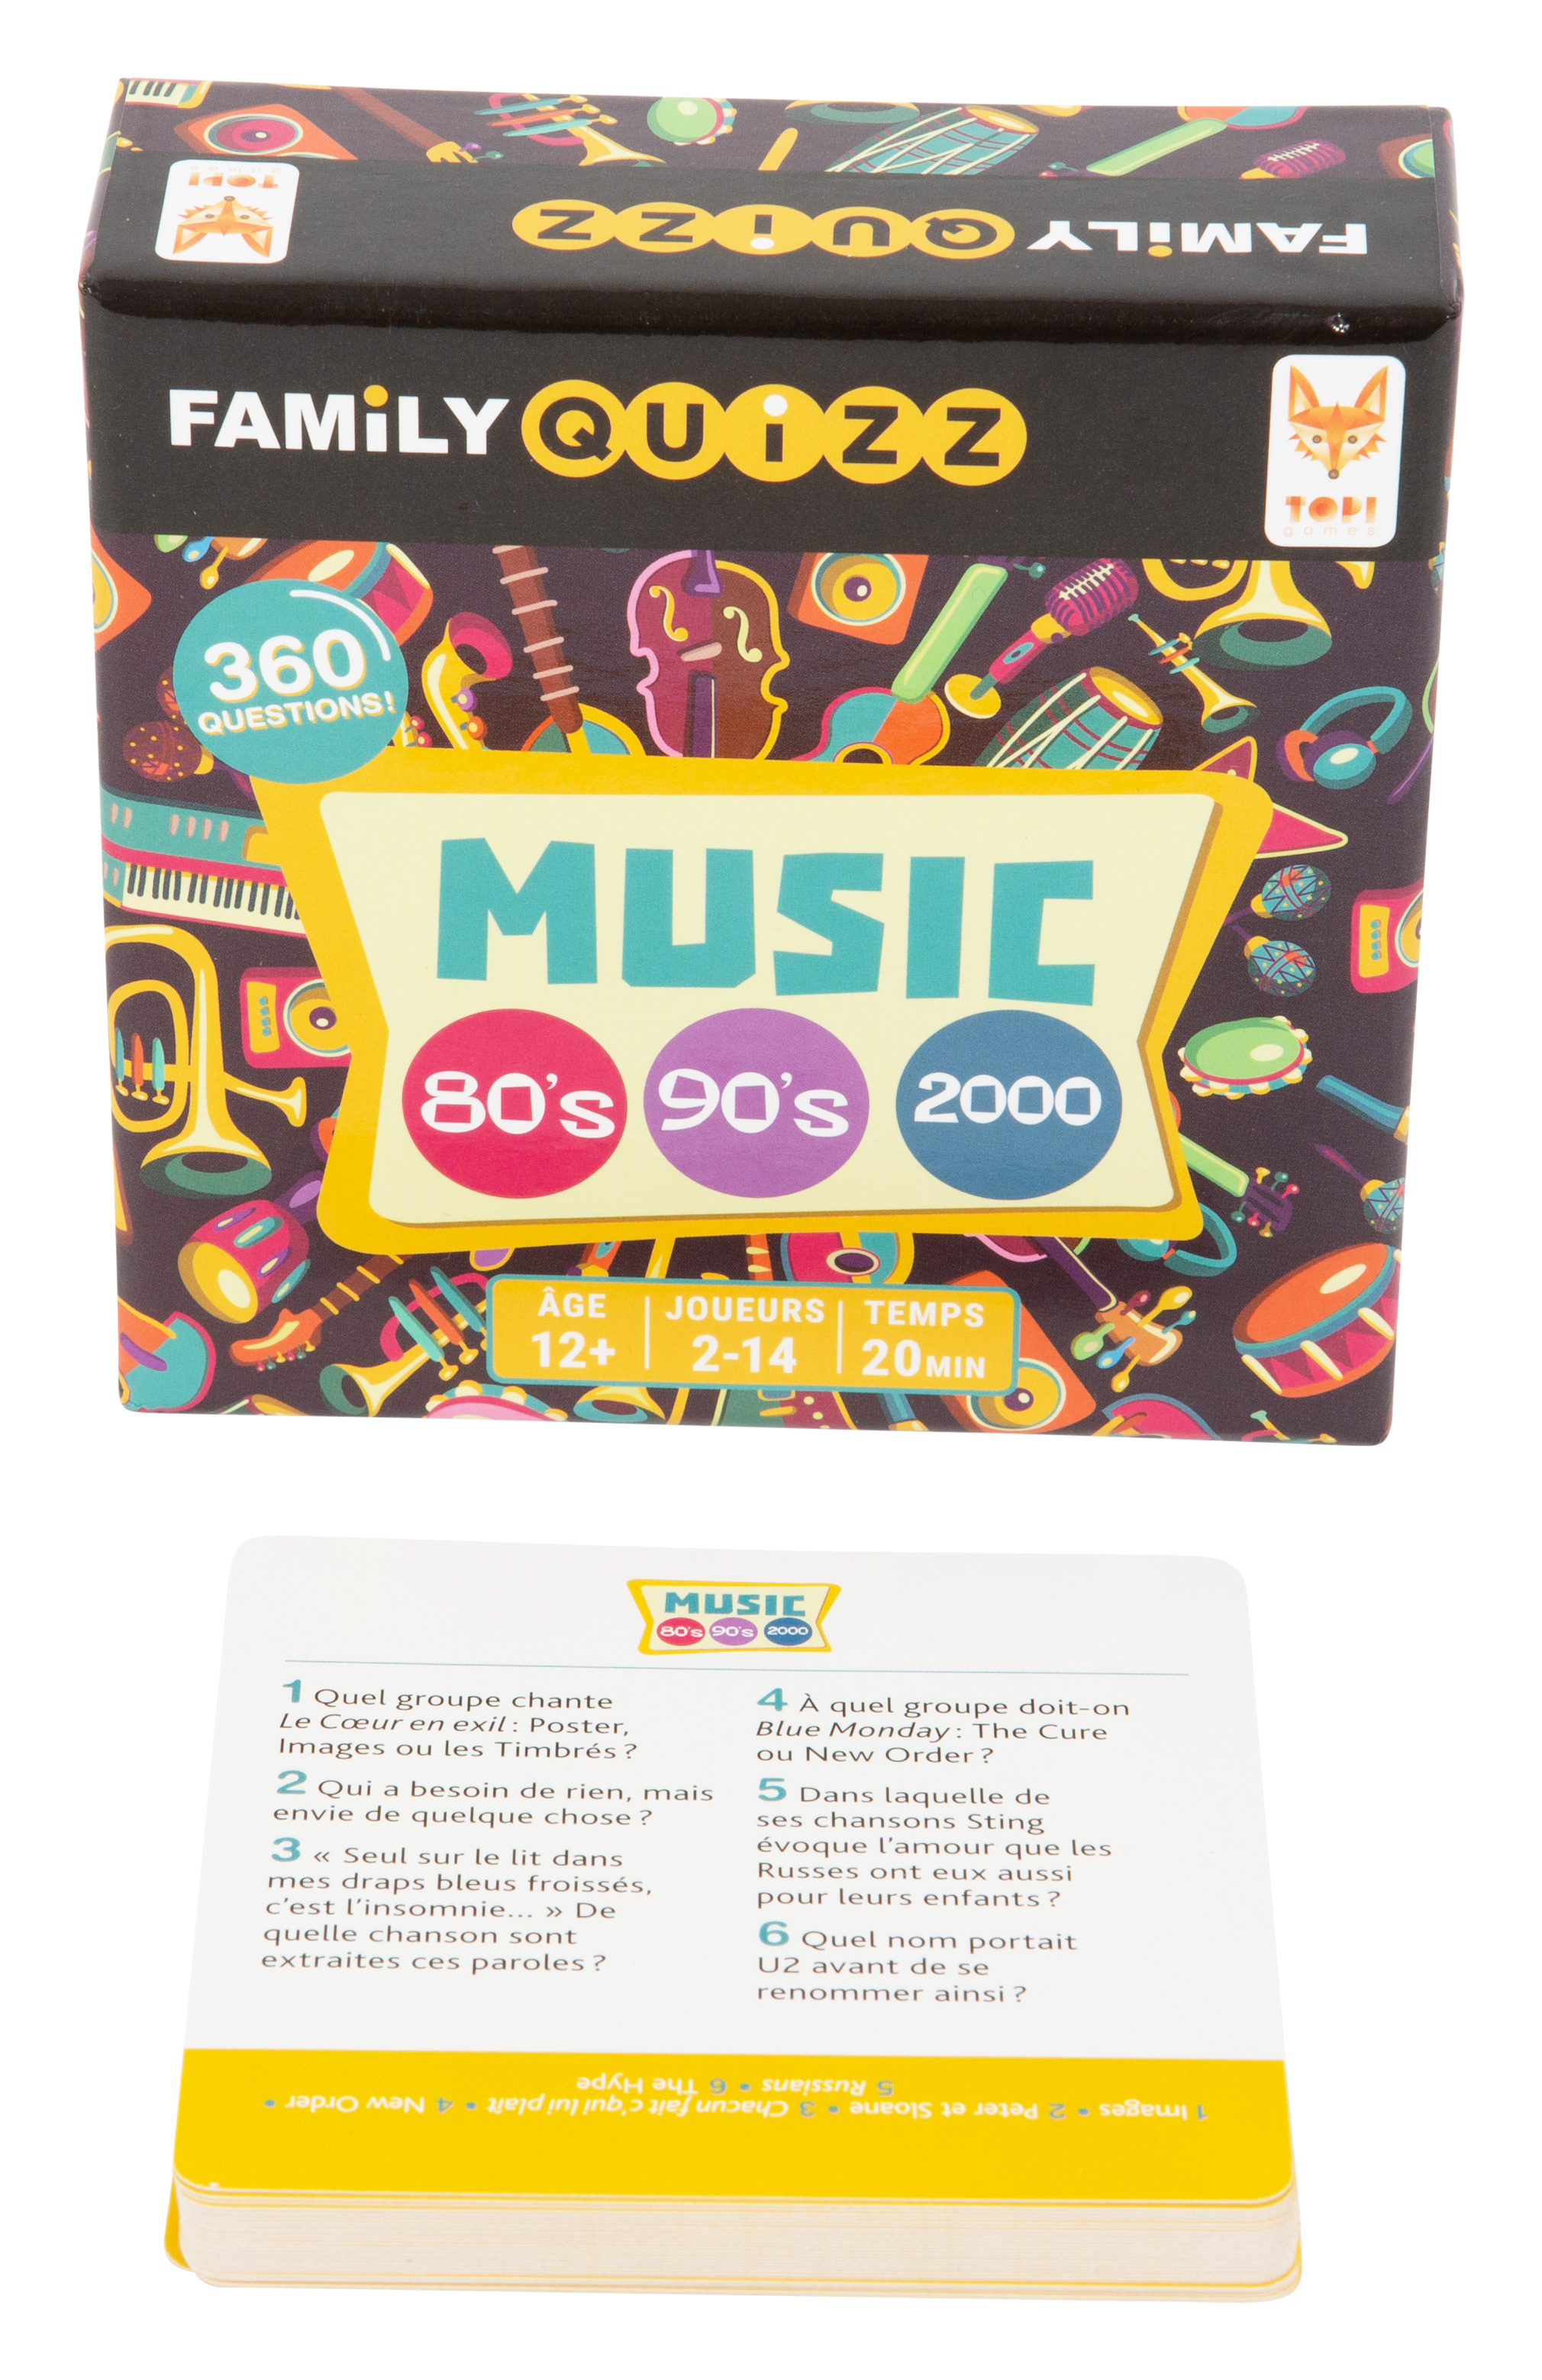 Boite du jeu de société Family Quizz Music et une des cartes